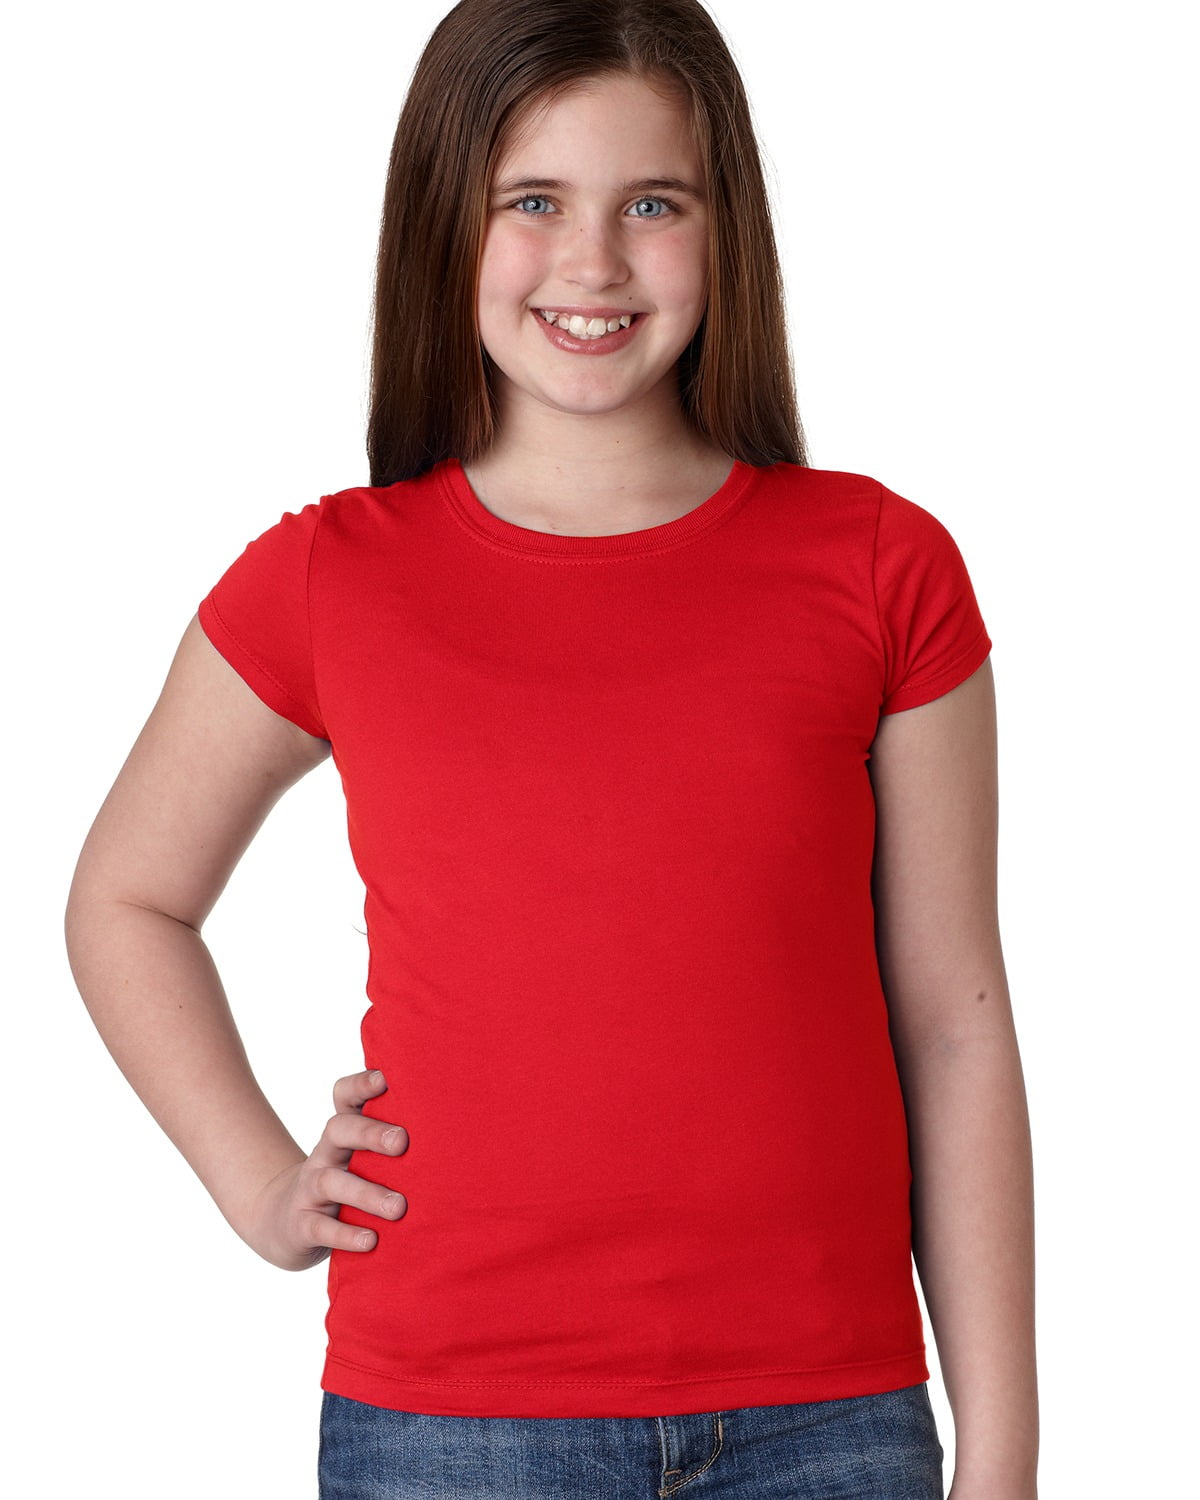 girls red tshirt